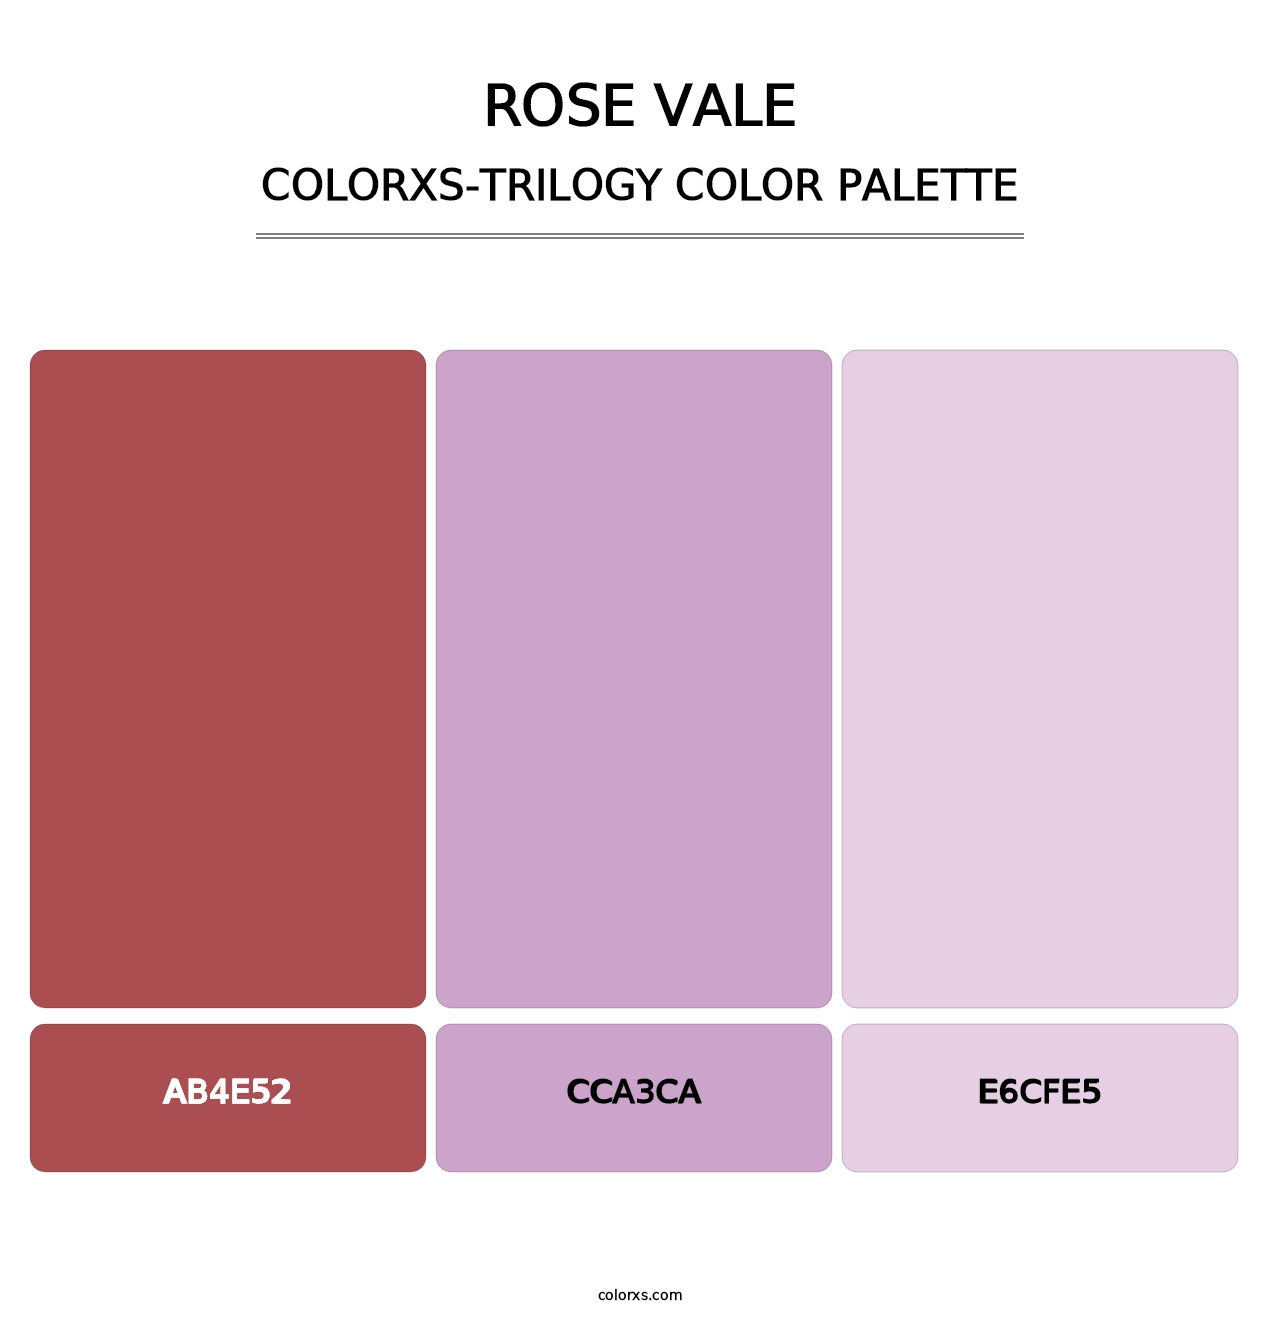 Rose Vale - Colorxs Trilogy Palette